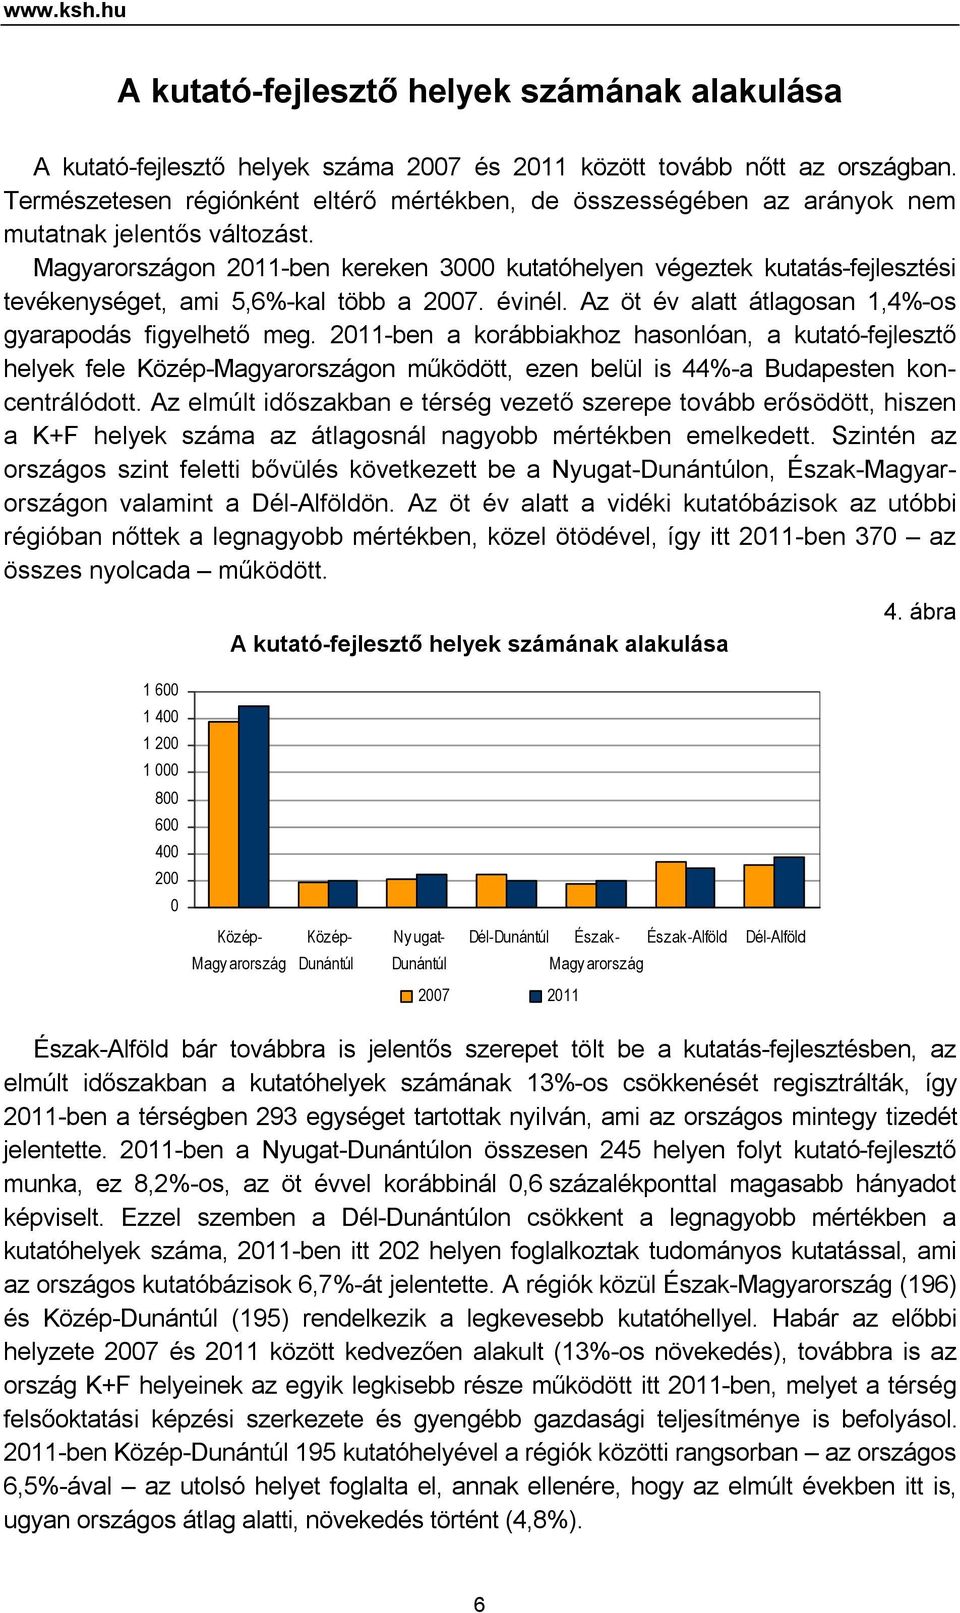 Magyarországon 2011-ben kereken 3000 kutatóhelyen végeztek kutatás-fejlesztési tevékenységet, ami 5,6%-kal több a 2007. évinél. Az öt év alatt átlagosan 1,4%-os gyarapodás figyelhető meg.